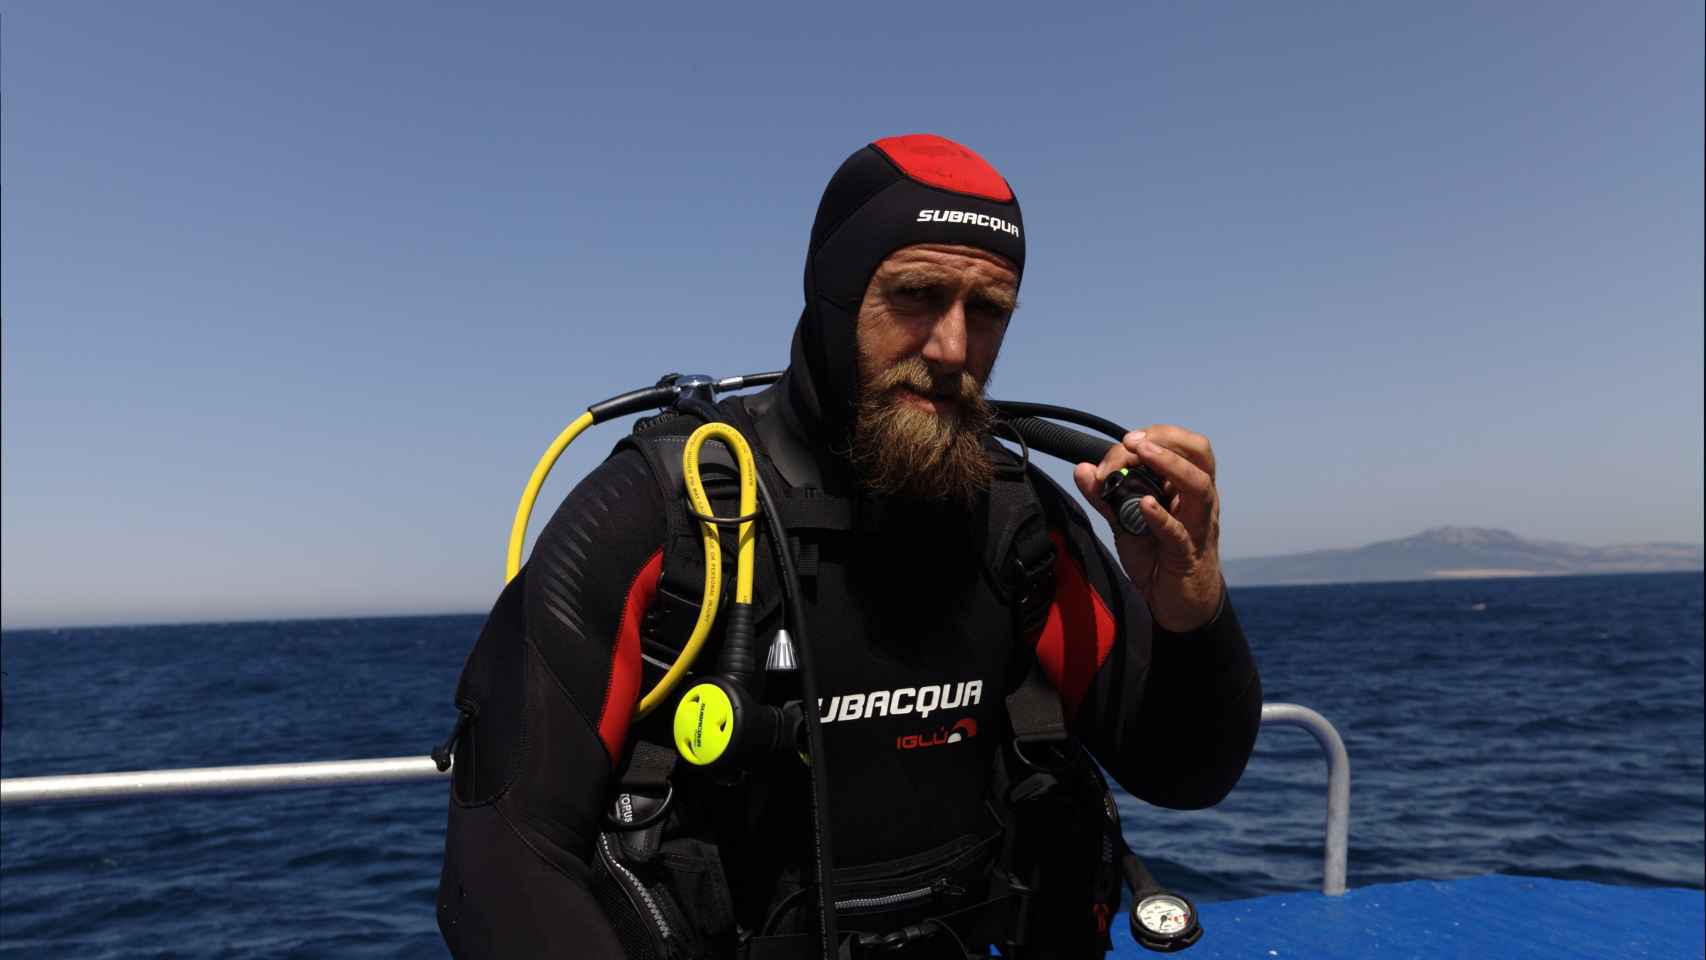 Buceando en el mar de Alborán, durante uno de sus programas en Discovery Max.